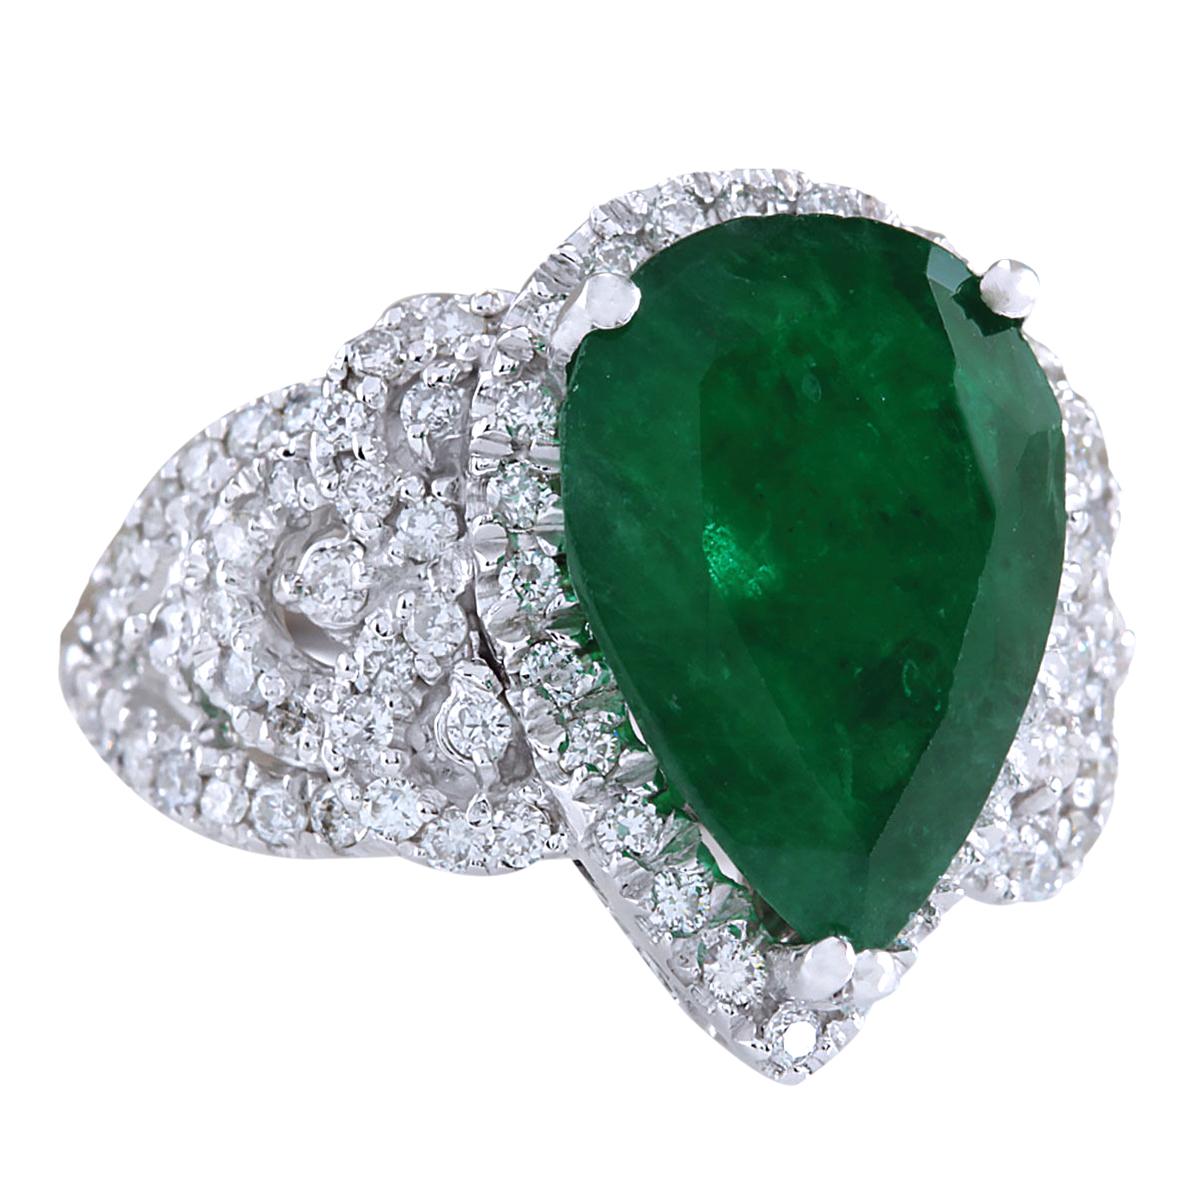 Lassen Sie sich von der zeitlosen Eleganz dieses exquisiten Smaragd-Diamantrings aus luxuriösem 14-karätigem Weißgold begeistern. Mit einem Gesamtgewicht von 8,20 Karat ist dieser Ring ein strahlendes Fest der Opulenz und Raffinesse.

In seinem